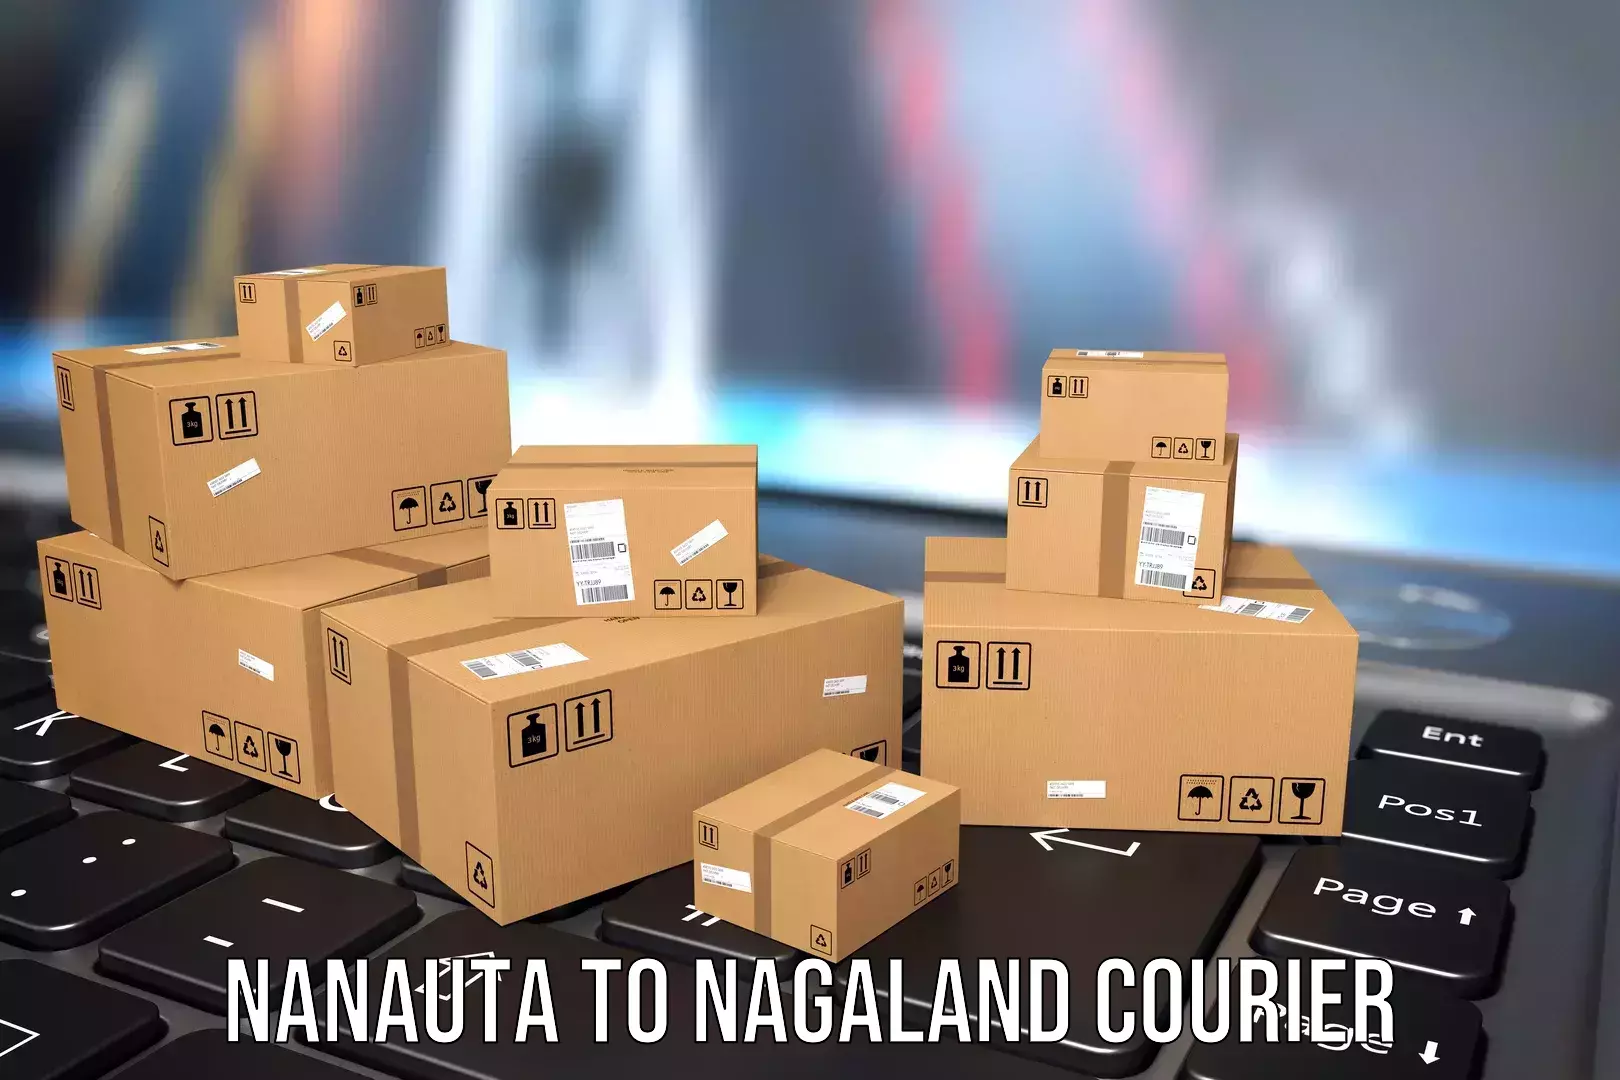 Direct baggage courier Nanauta to Nagaland